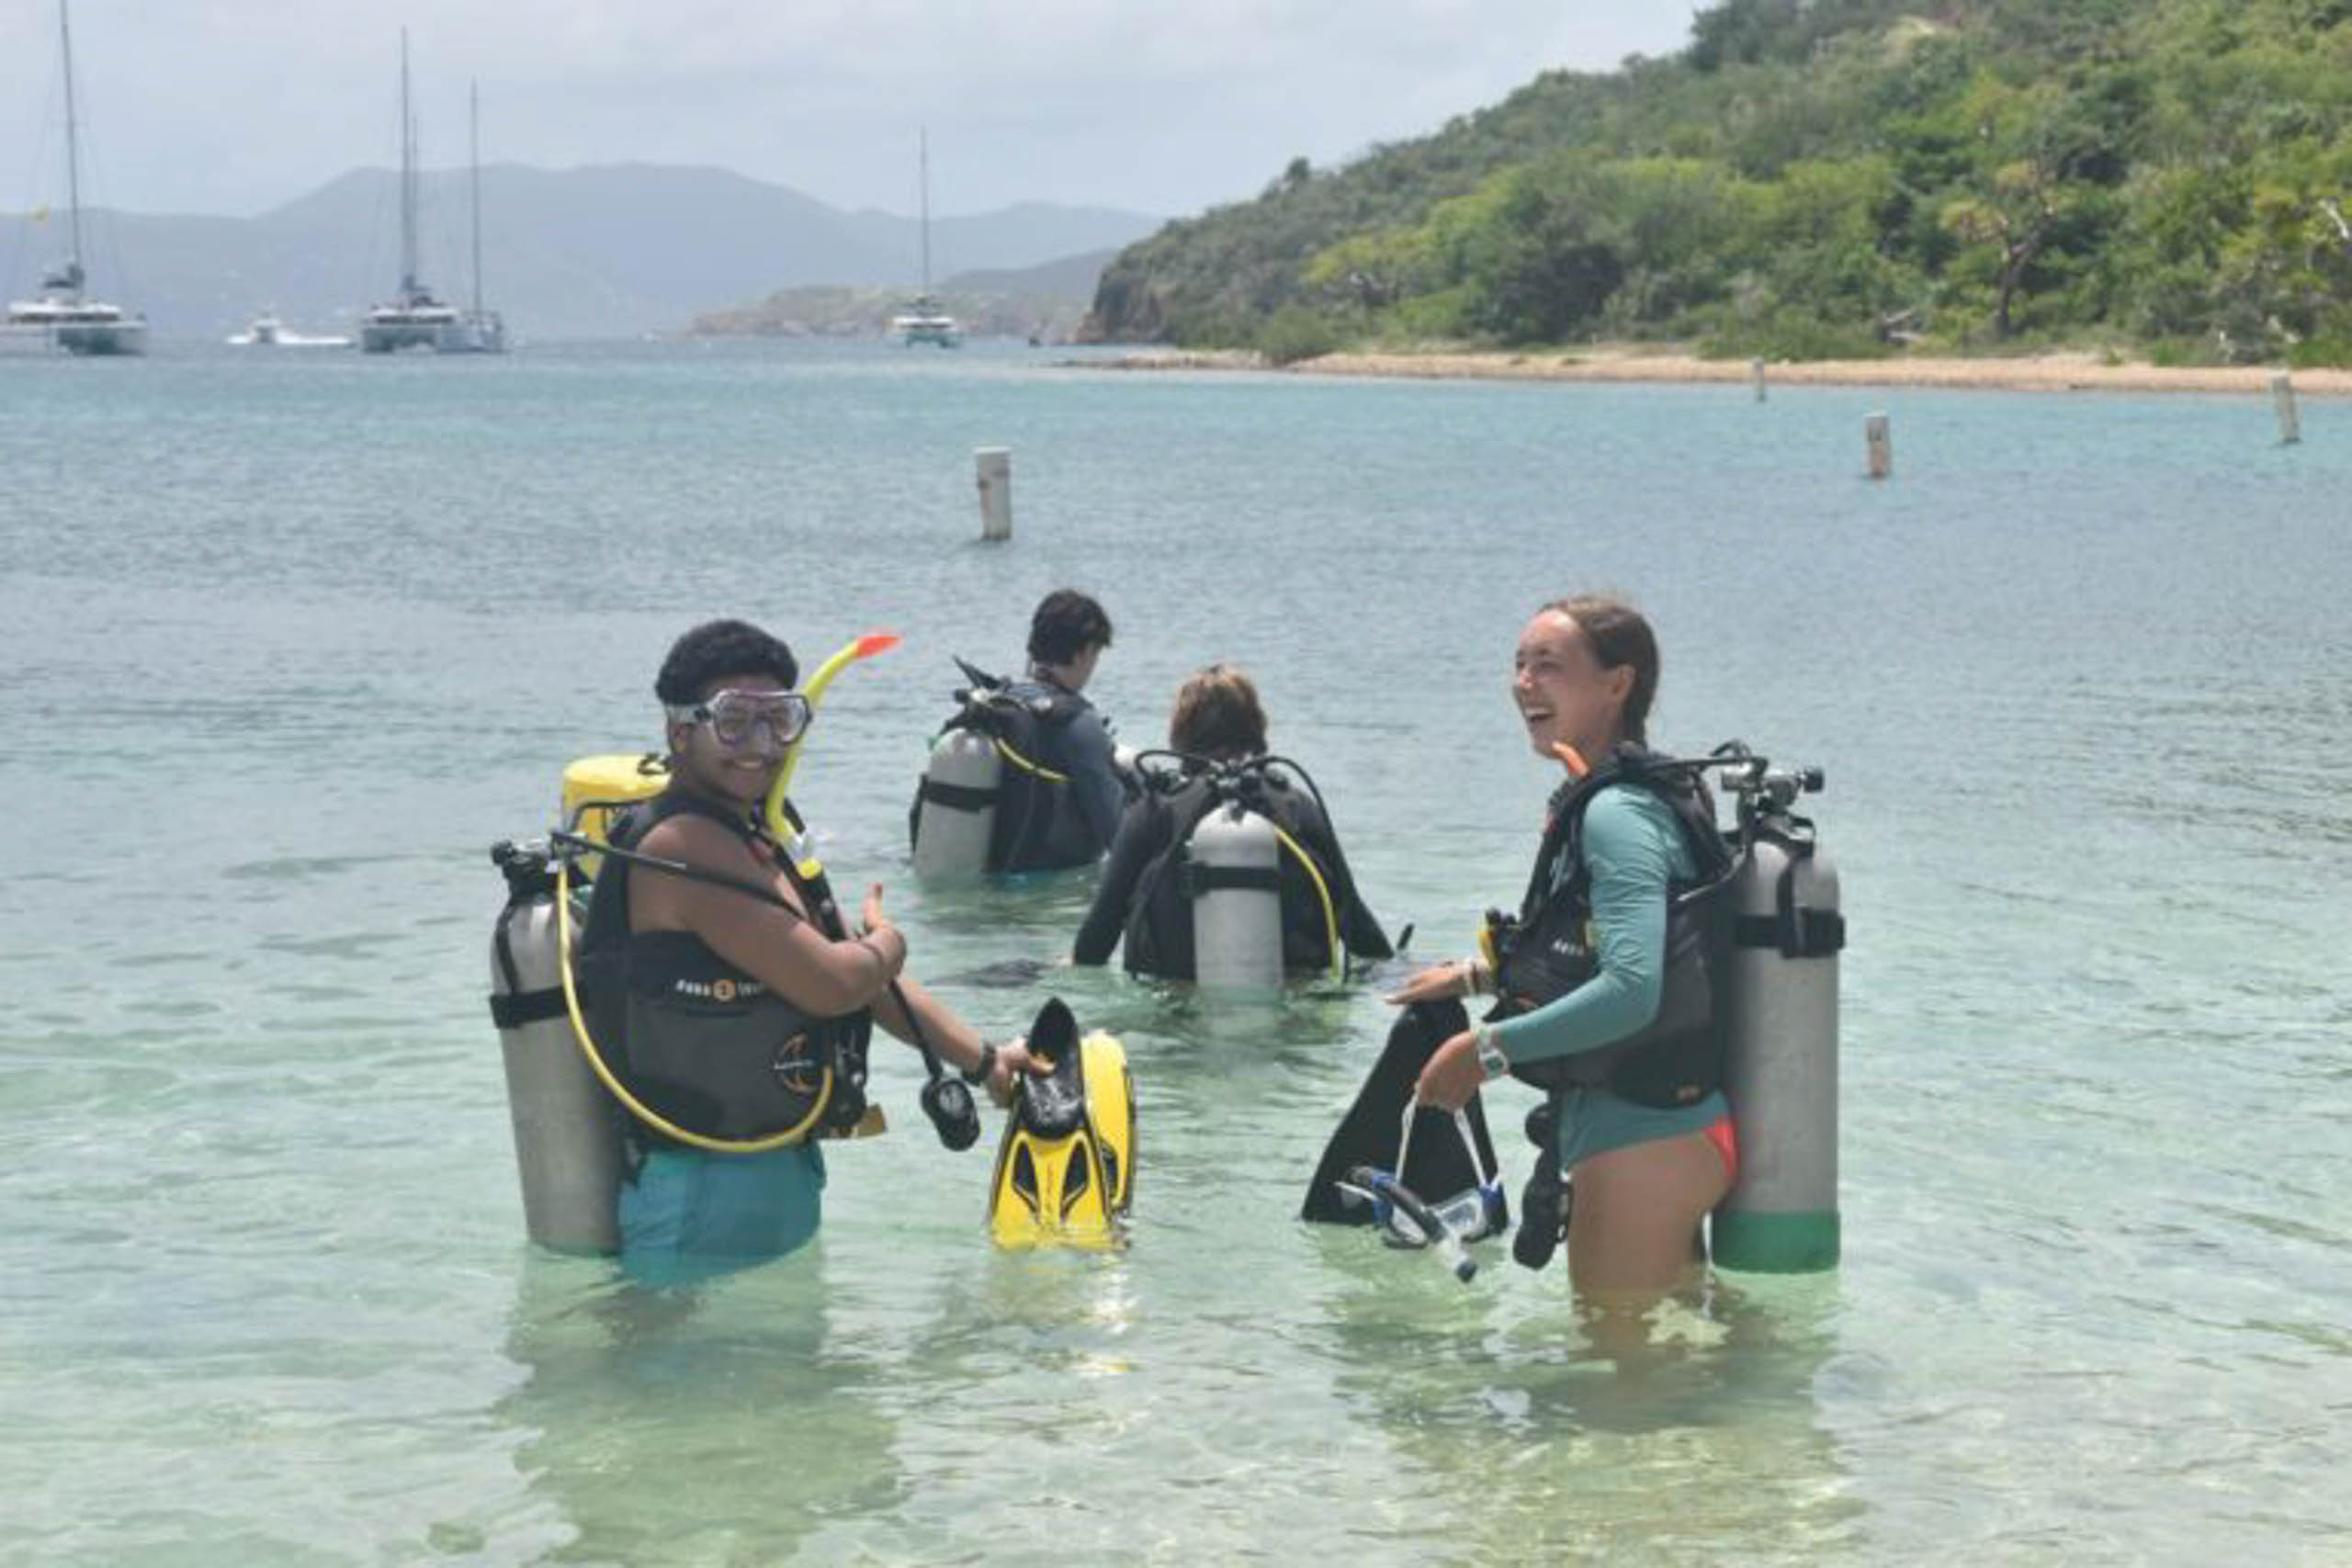 A group of people wearing scuba gear in water.